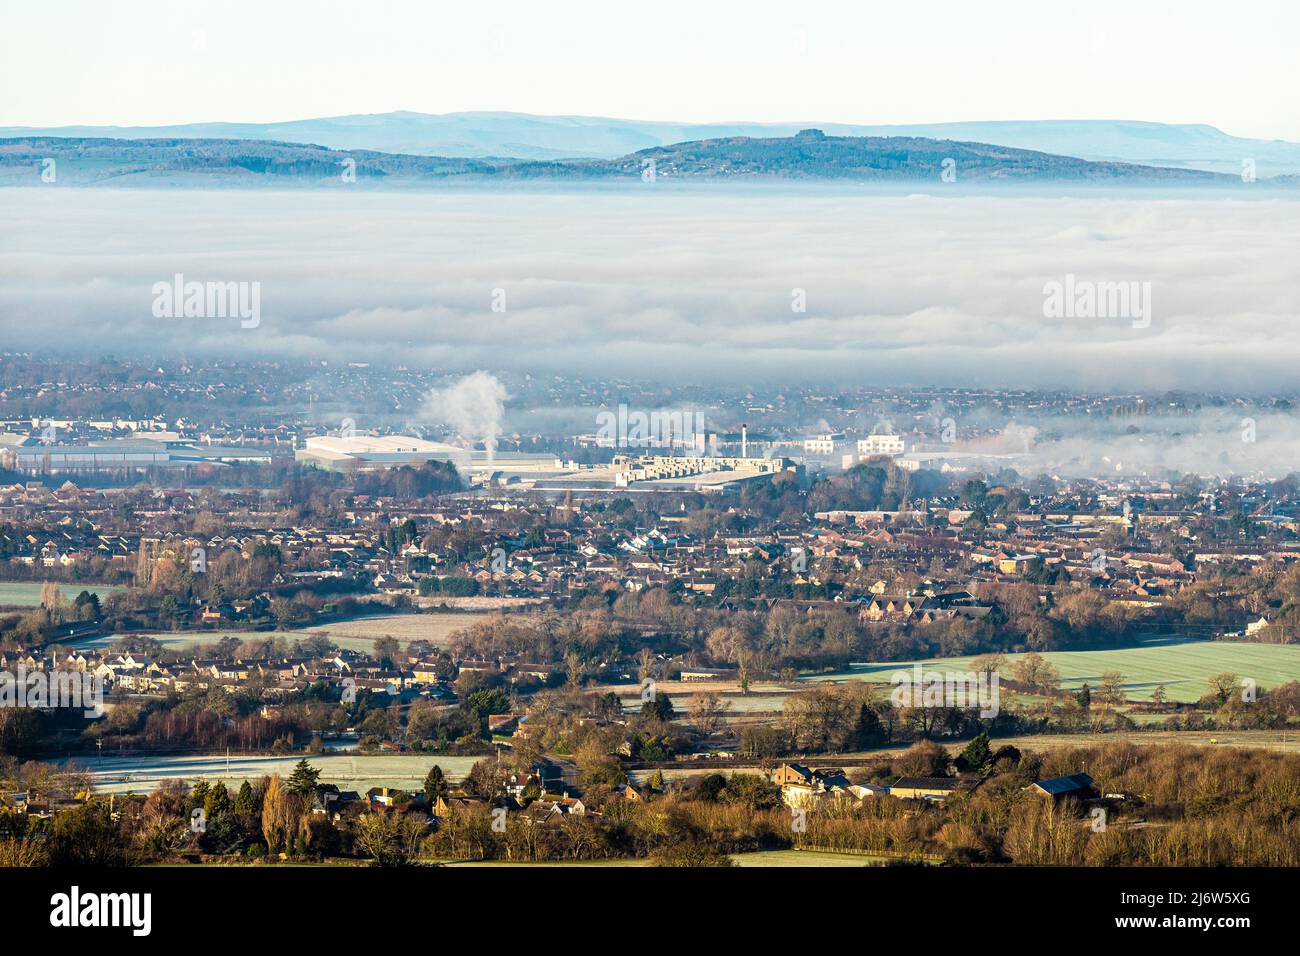 Un'inversione di temperatura che causa nebbia per oscurare la città di Gloucester, Inghilterra Regno Unito. Brockworth è in primo piano e May Hill sullo sfondo. Foto Stock